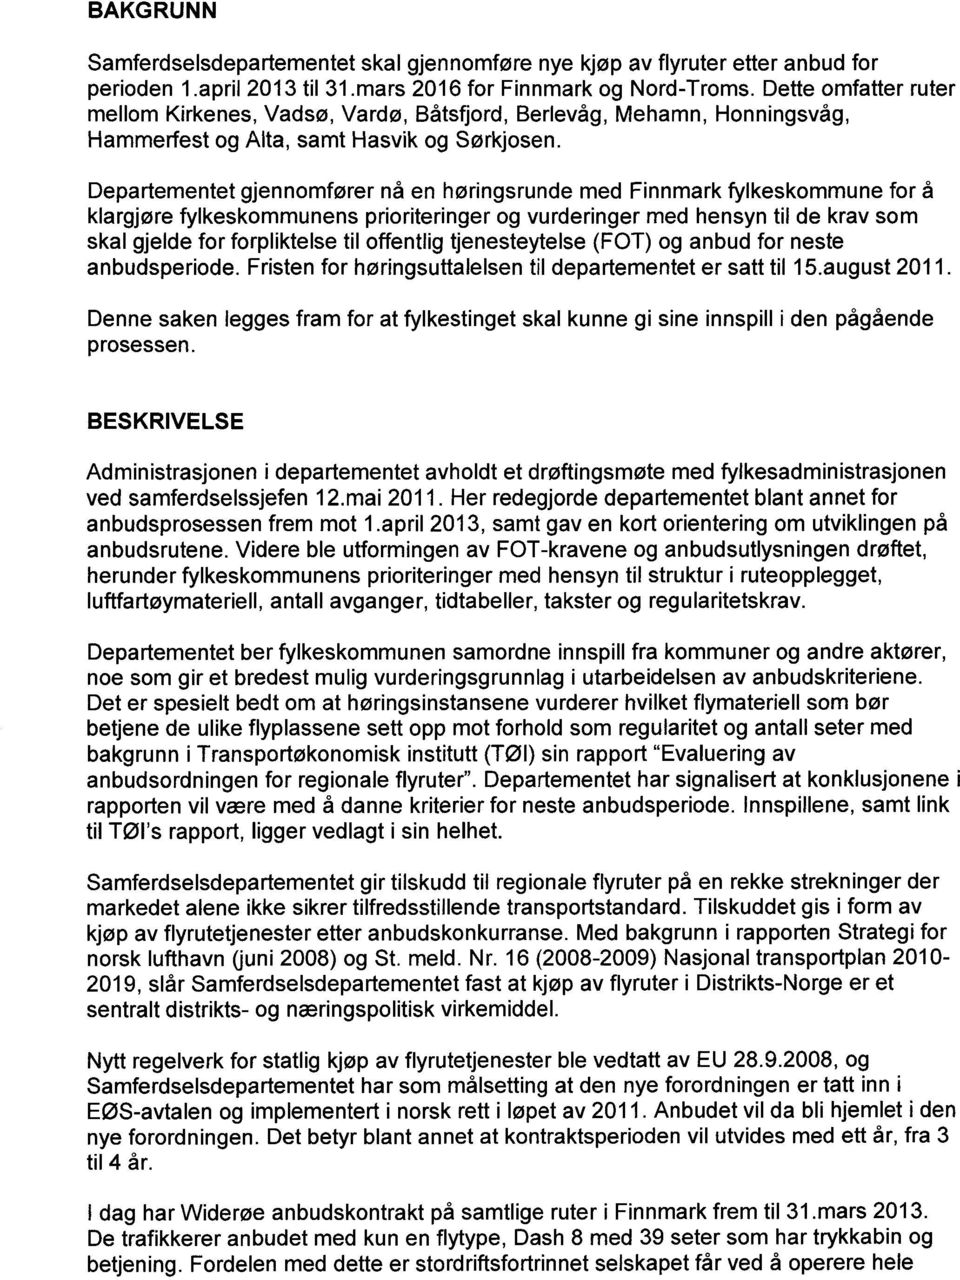 Departementet gjennomfører nå en høringsrunde med Finnmark fylkeskommune for å klargjøre fylkeskommunens prioriteringer og vurderinger med hensyn til de krav som skal gjelde for forpliktelse til